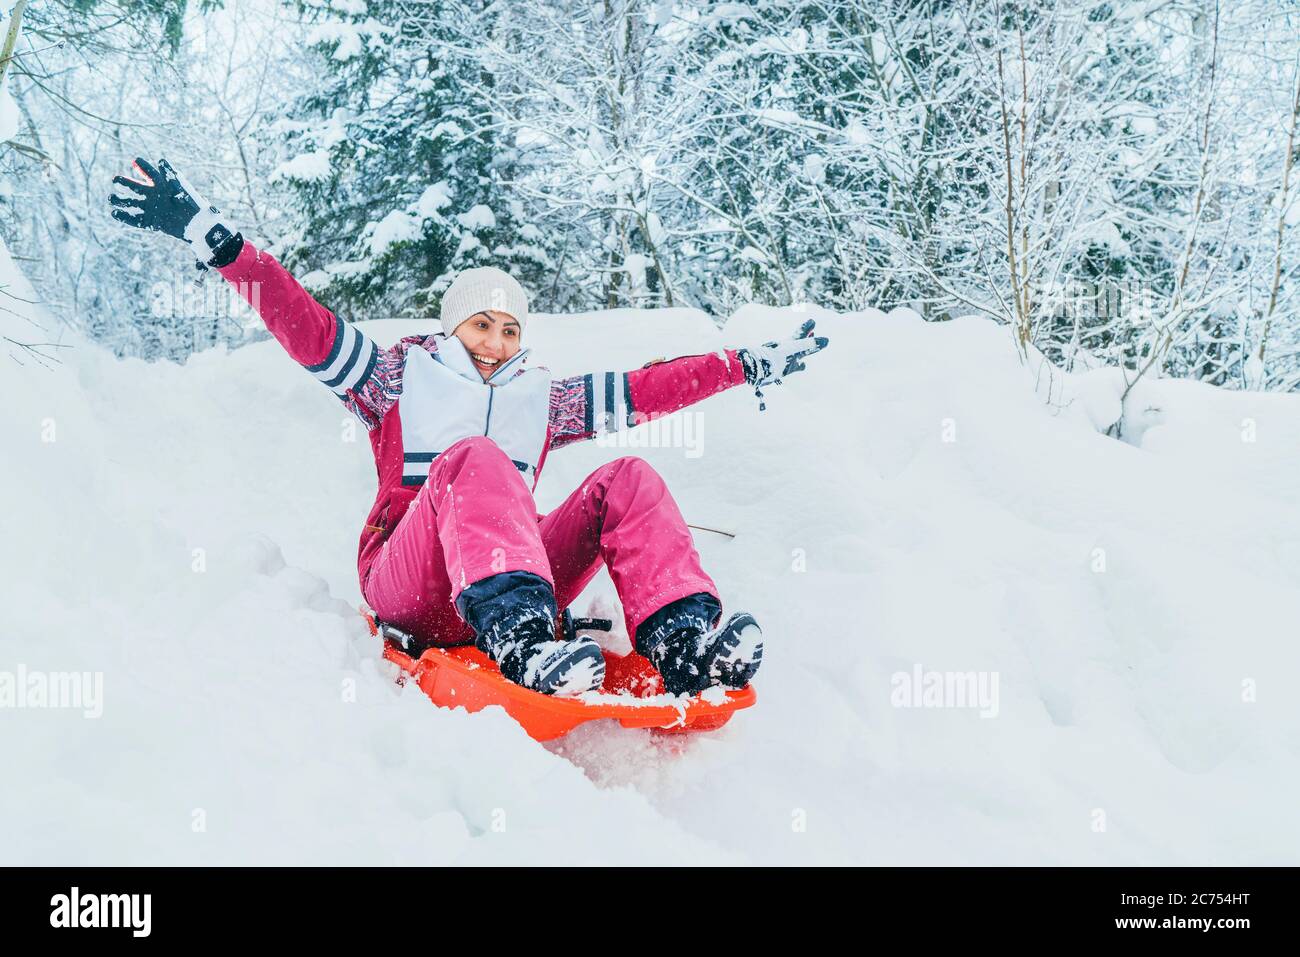 Junge Frau rutschen von Schneehöhe sitzen in einer Rutsche.Winter  Aktivitäten Konzept Bild Stockfotografie - Alamy